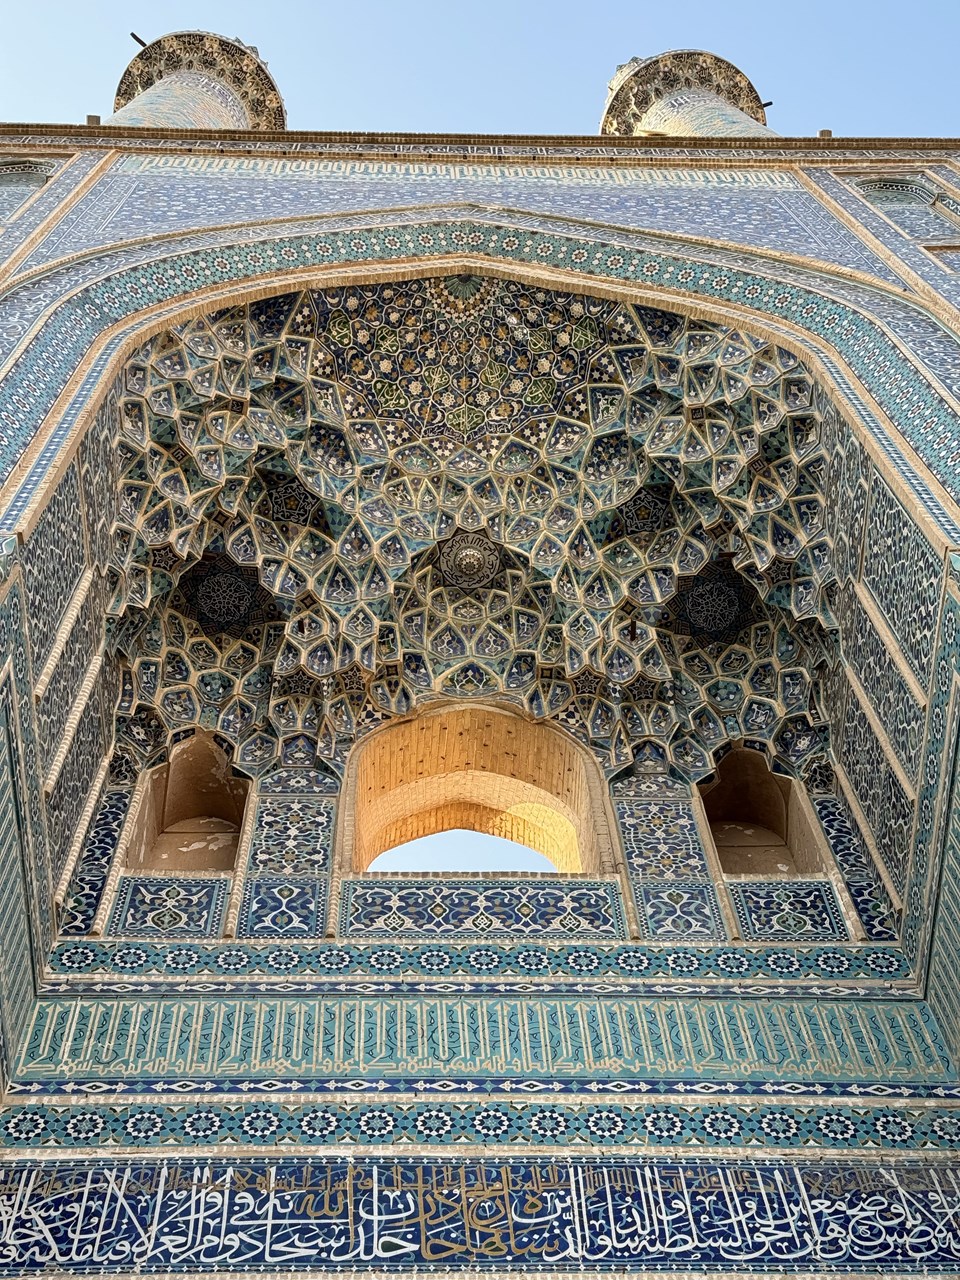 İran'daki Cuma Cami farklı dönemlerin mimari özelliklerini yansıtıyor - 3